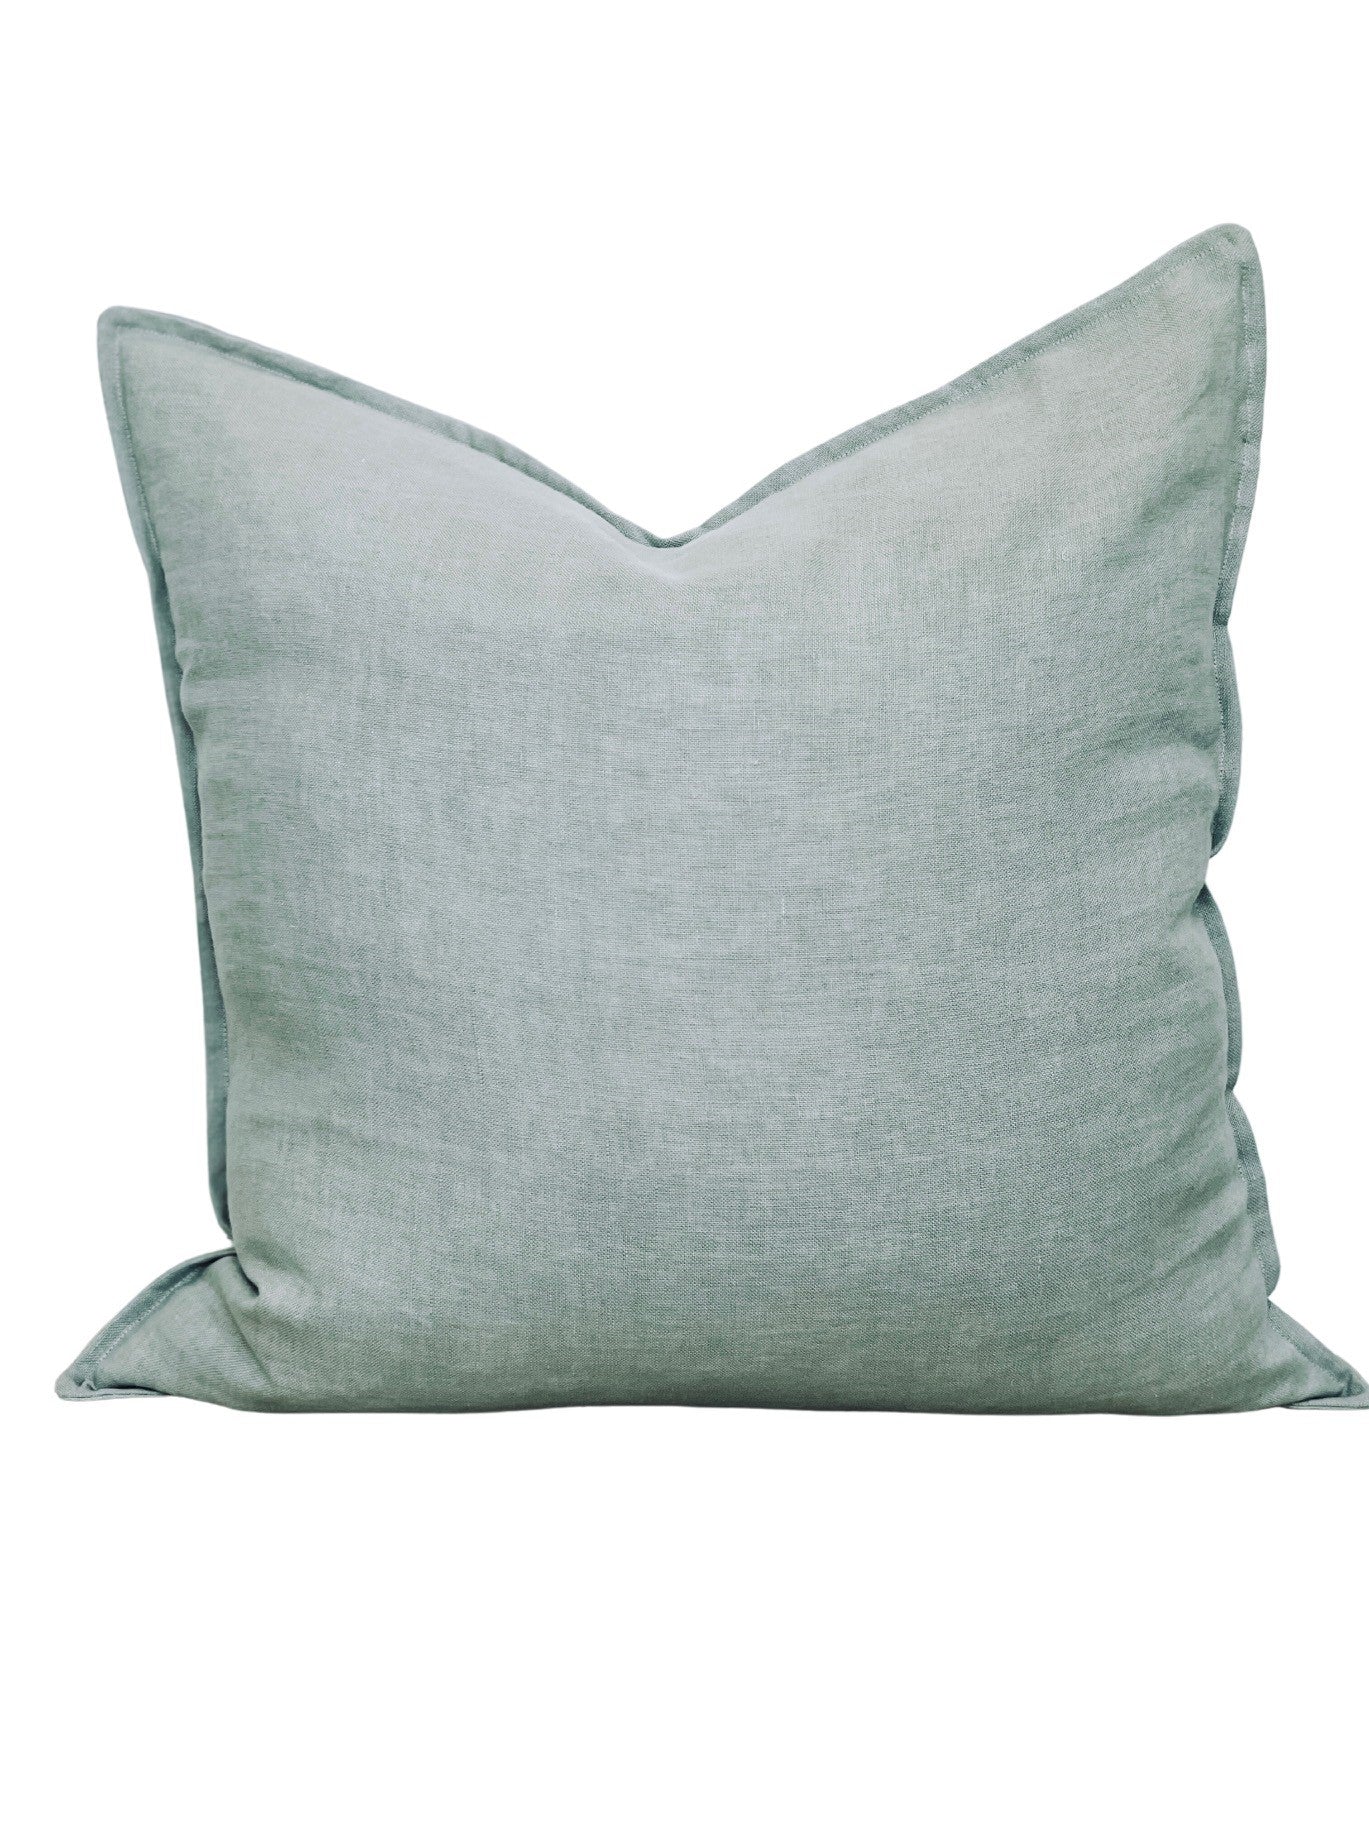 Cushion Cover - Laurel European Linen